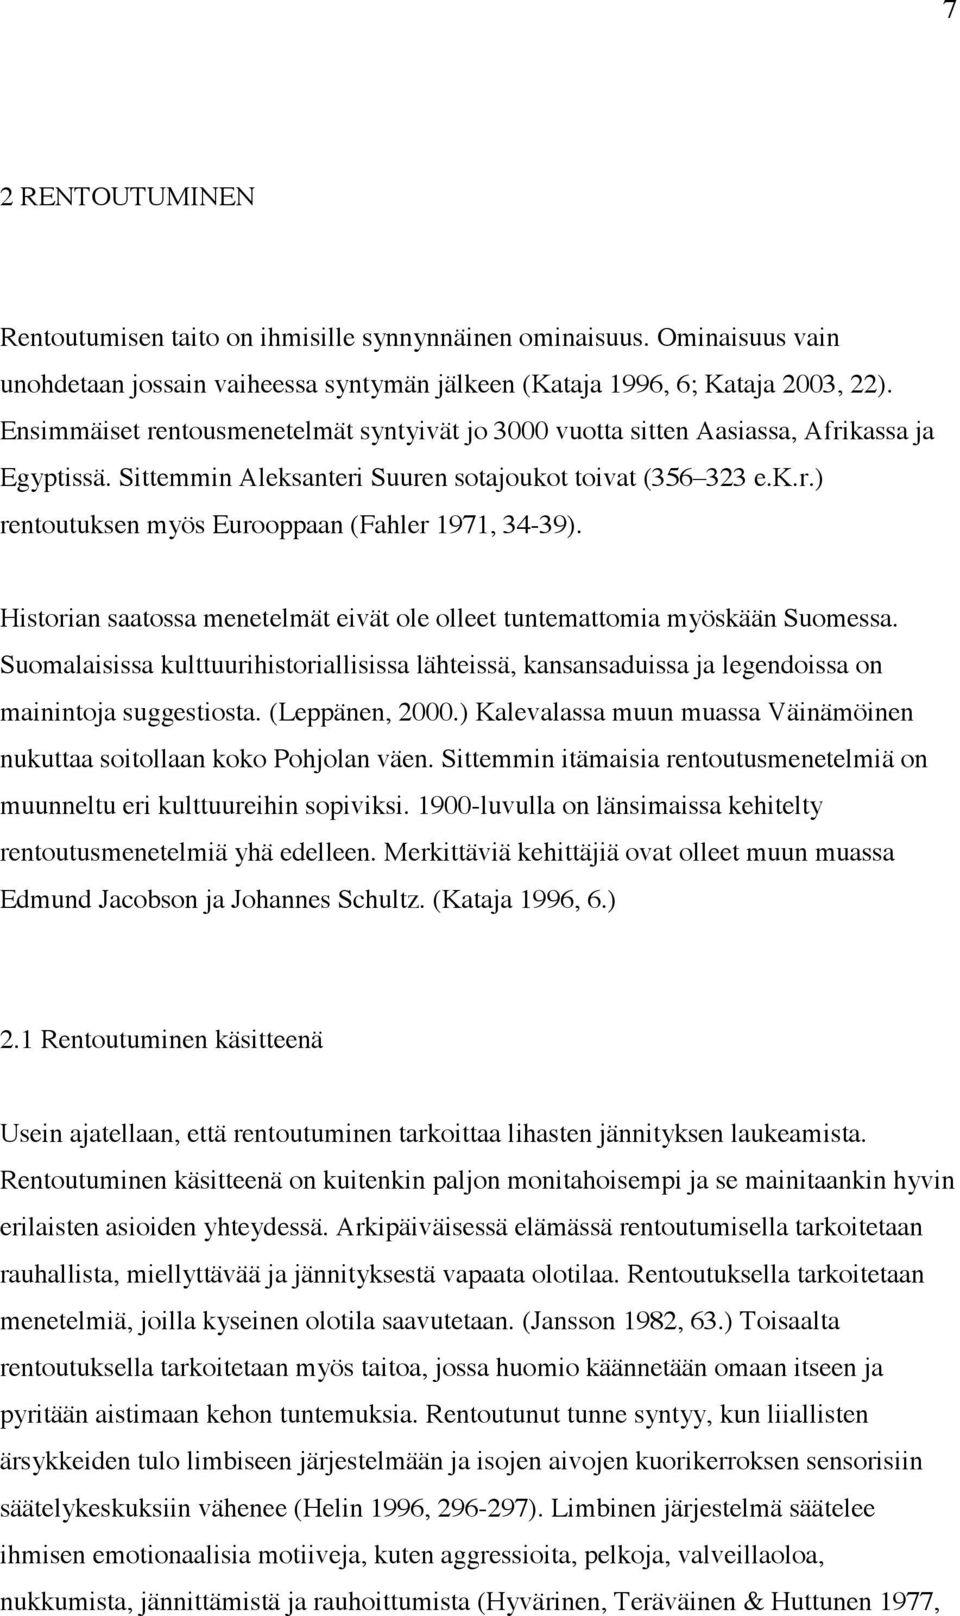 Historian saatossa menetelmät eivät ole olleet tuntemattomia myöskään Suomessa. Suomalaisissa kulttuurihistoriallisissa lähteissä, kansansaduissa ja legendoissa on mainintoja suggestiosta.